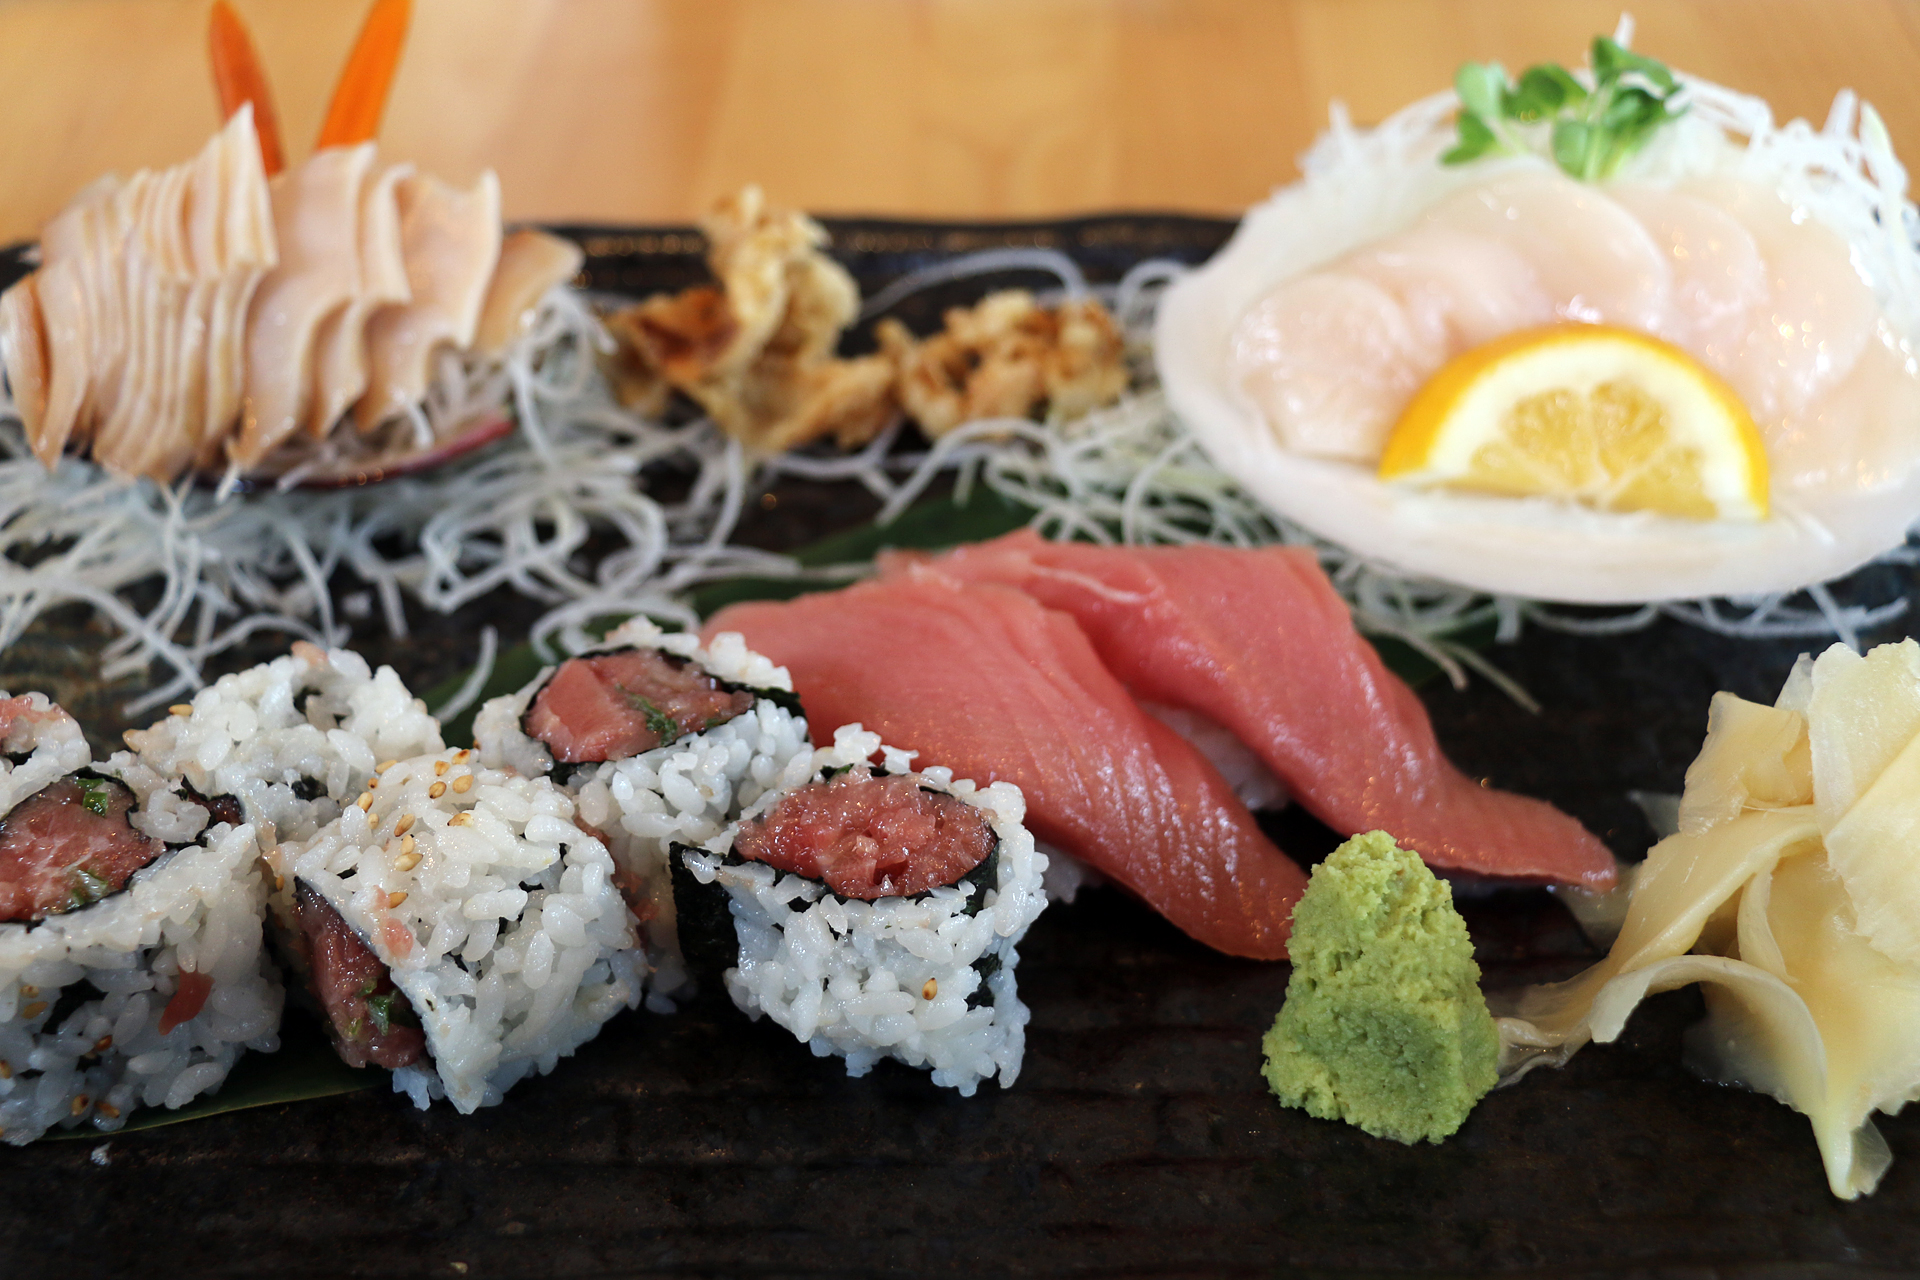 Daily Specials: An assortment of nigiri sushi and sashimi at Kiku.